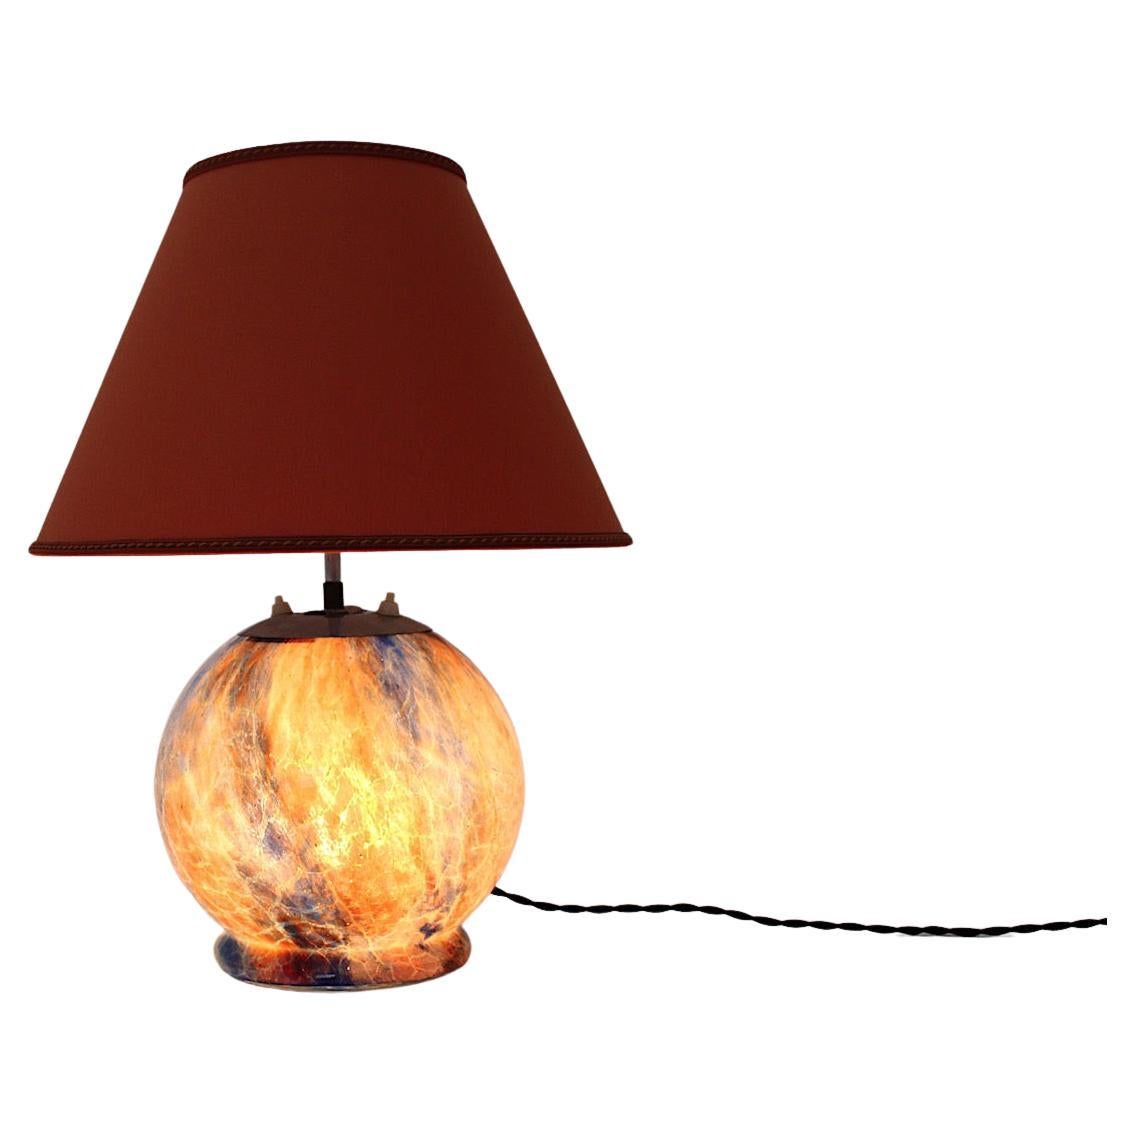 Lampe de table vintage Mid-Century Modern avec base en verre en forme de boule et un abat-jour en forme de triangle en tissu textile 1940s Allemagne.
La belle boule de verre aux couleurs variées comme l'orange brûlé, le rouge, le marron et le bleu